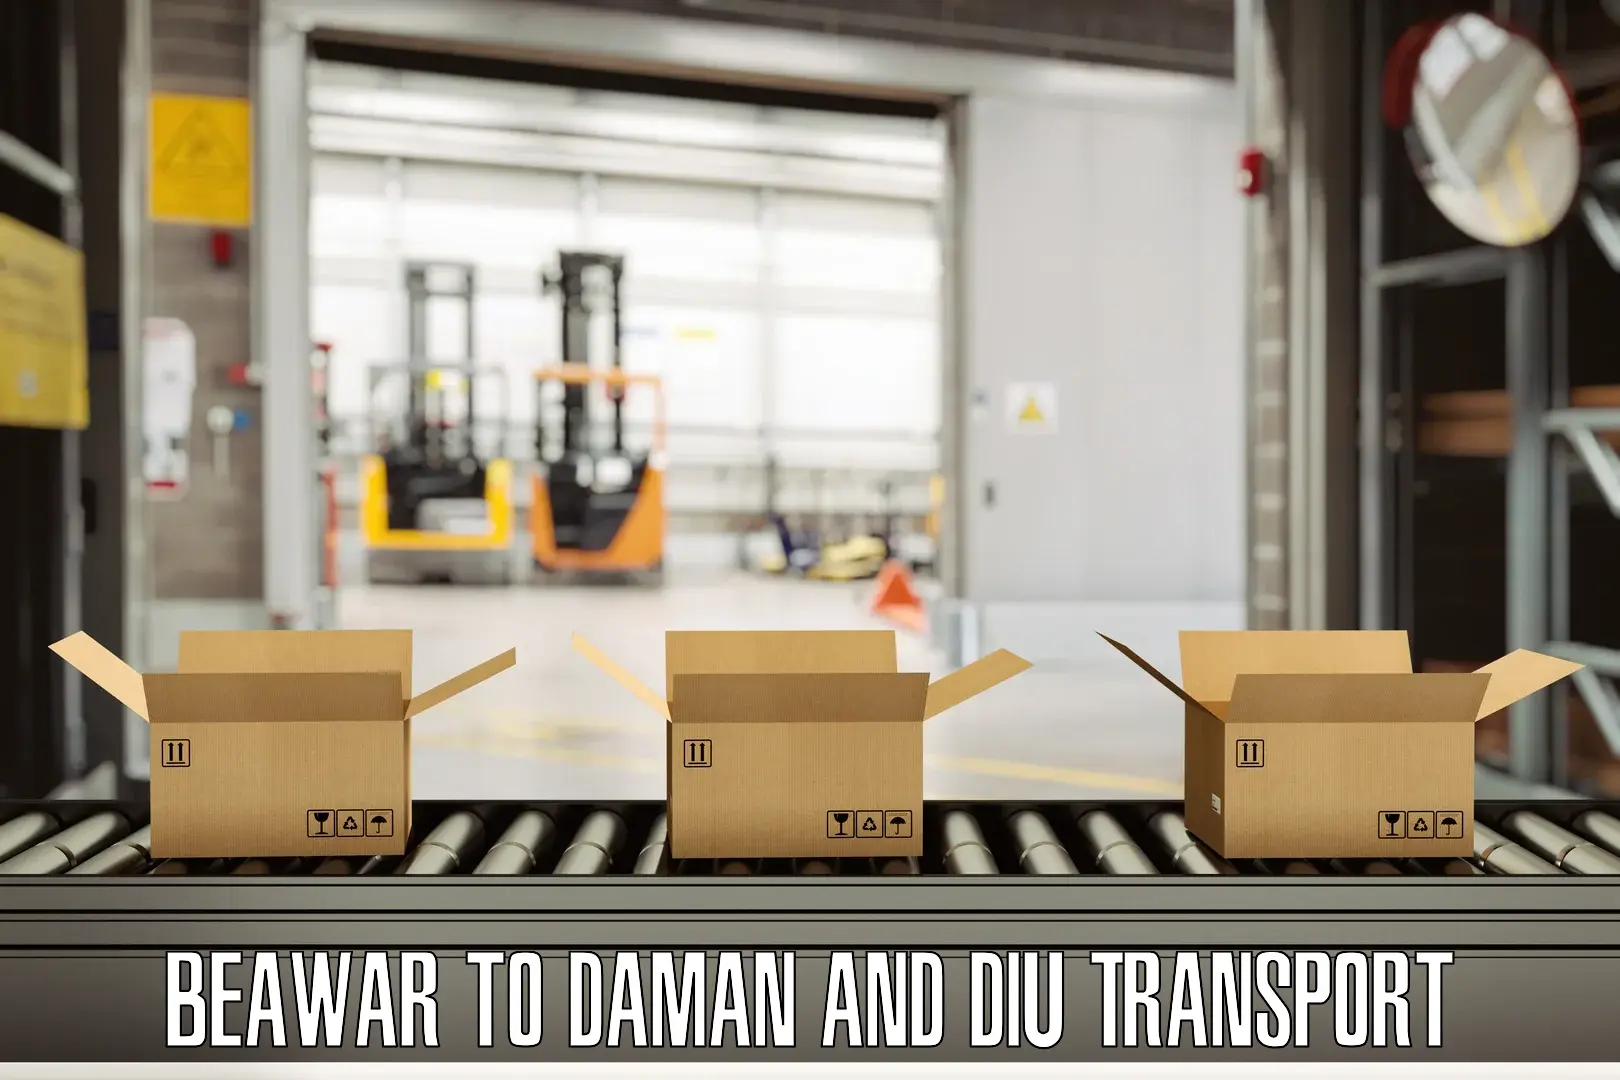 Daily transport service Beawar to Daman and Diu